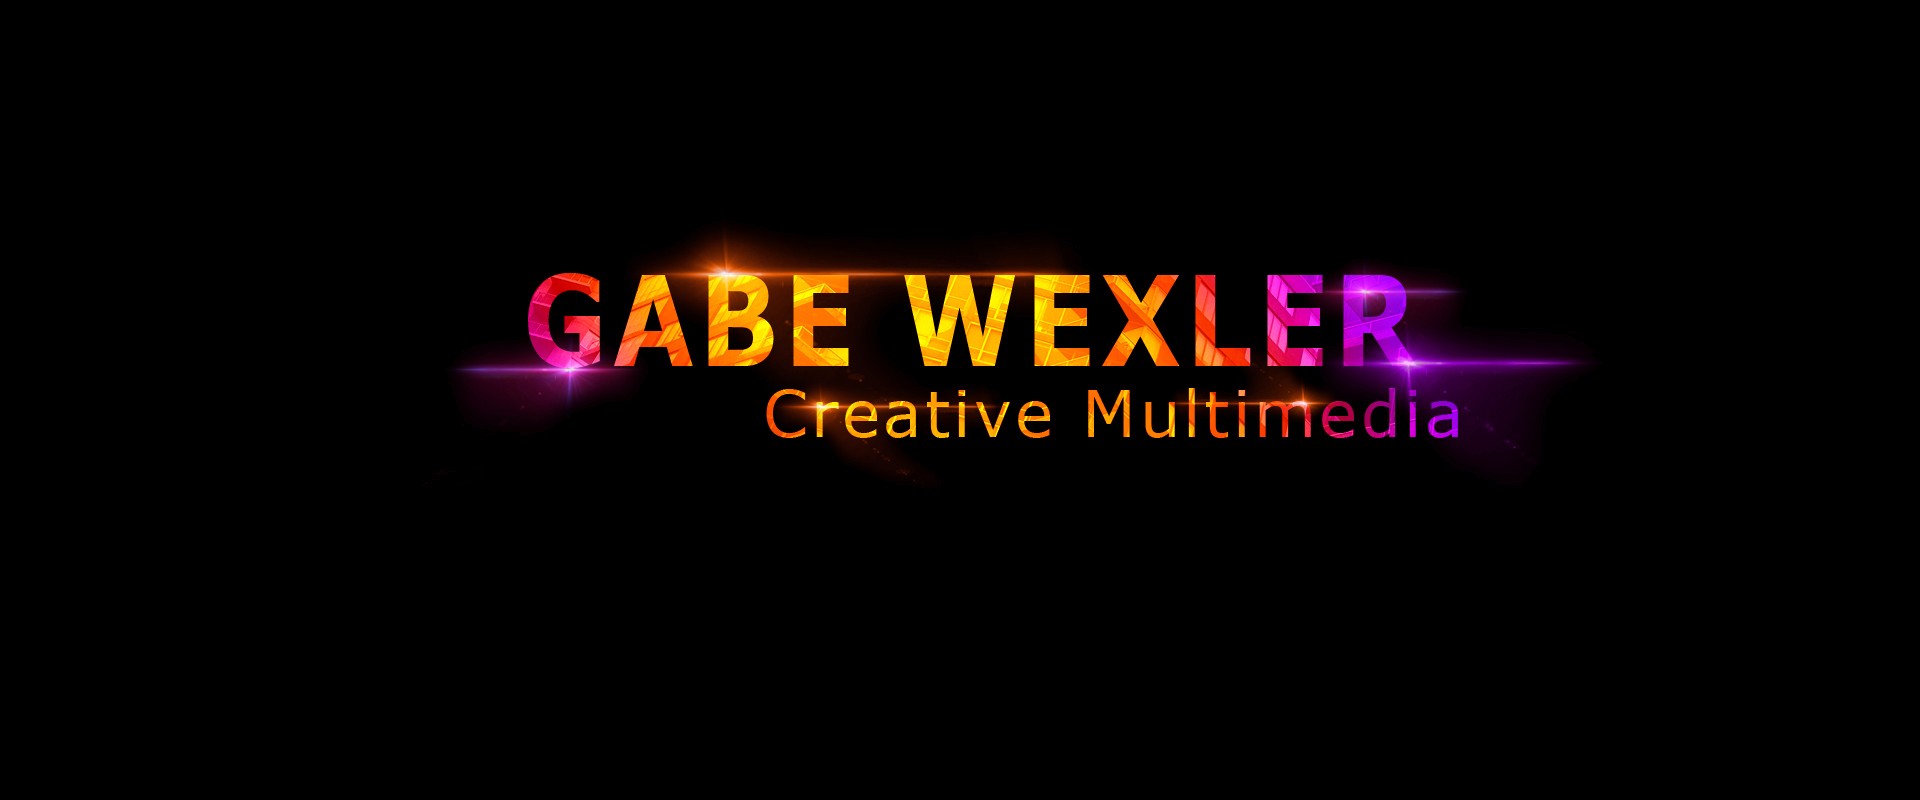 Gabe Wexler Creative Multimedia